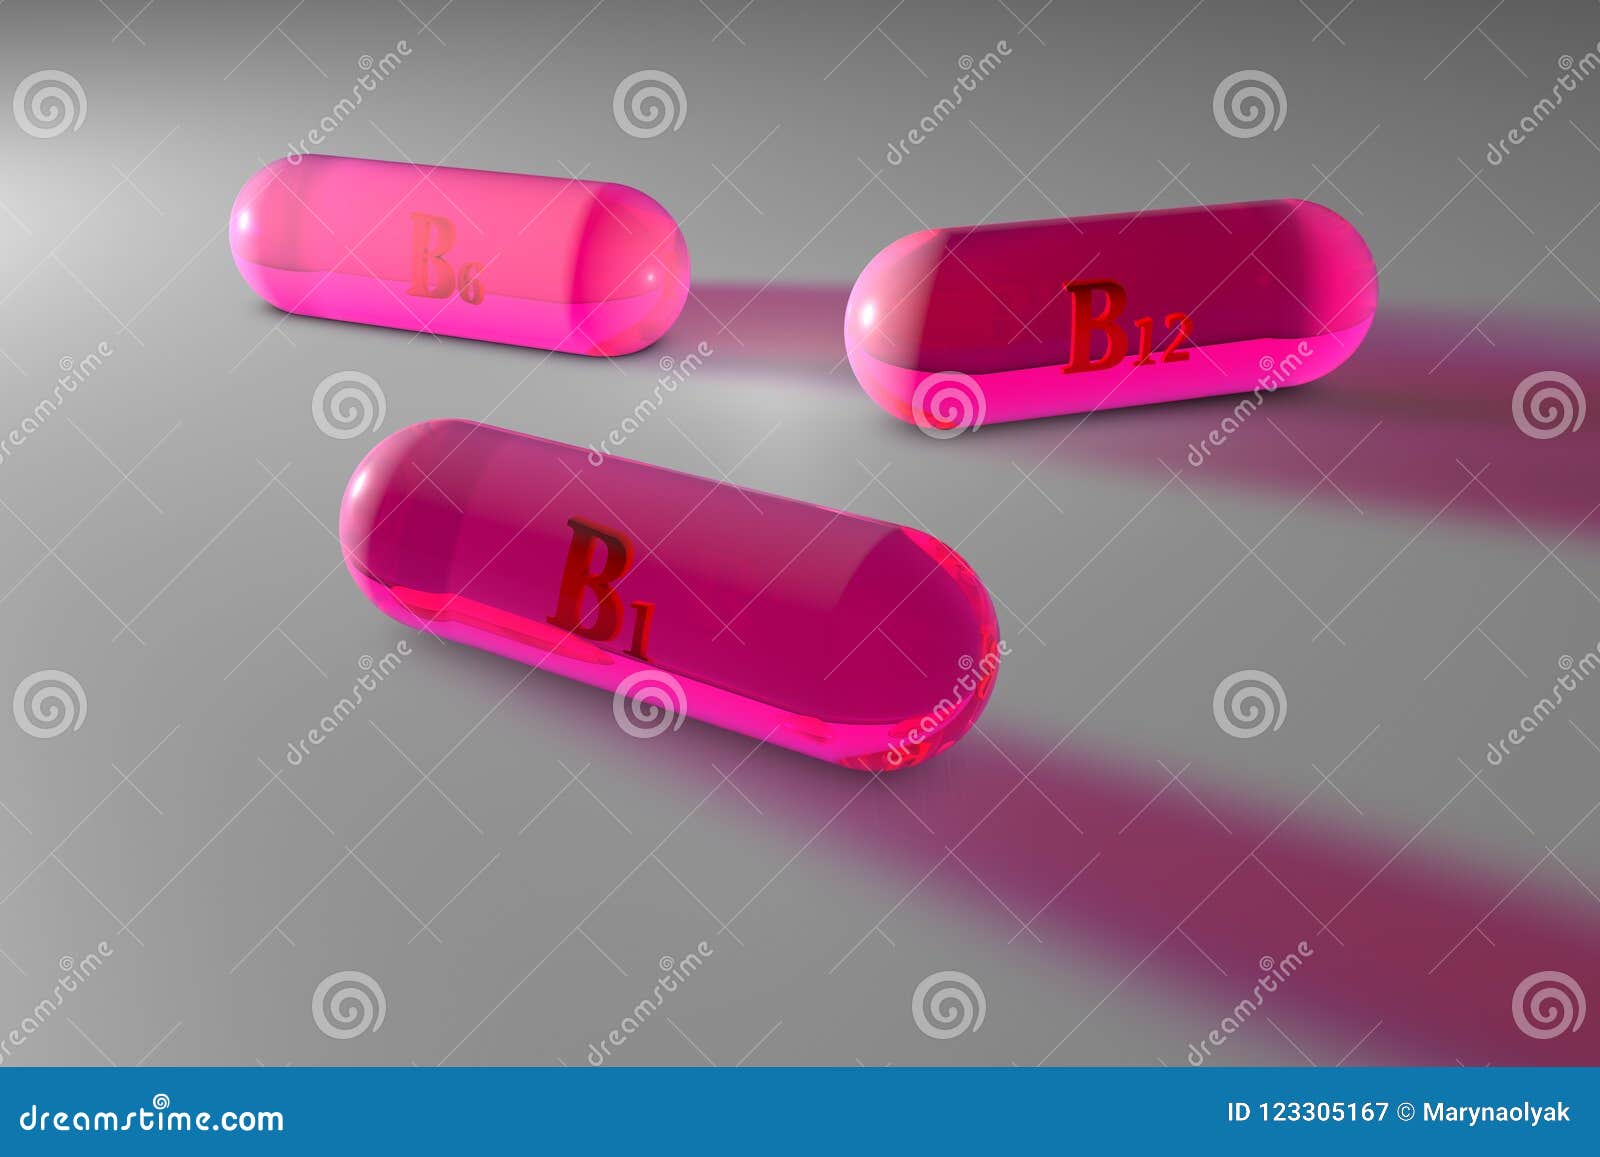 Transparent Pink Vitamin B1 B6 B12 Capsules Vitamin And